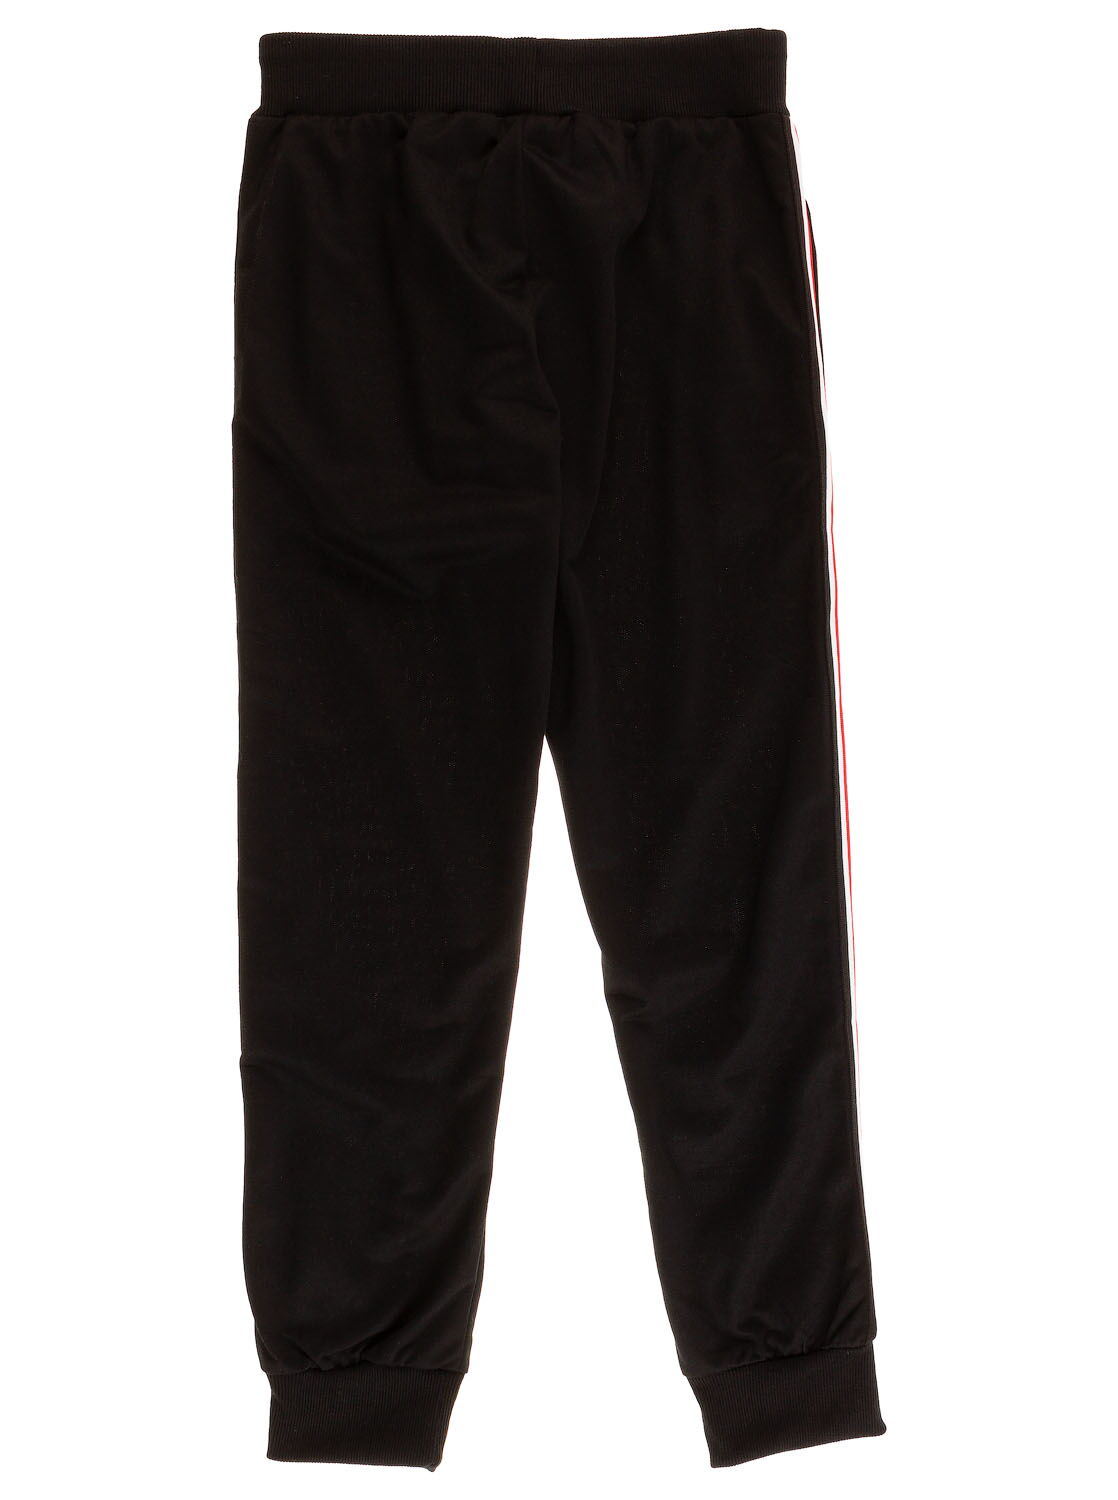 Спортивные штаны для мальчика Sincere черные 2212 - фото